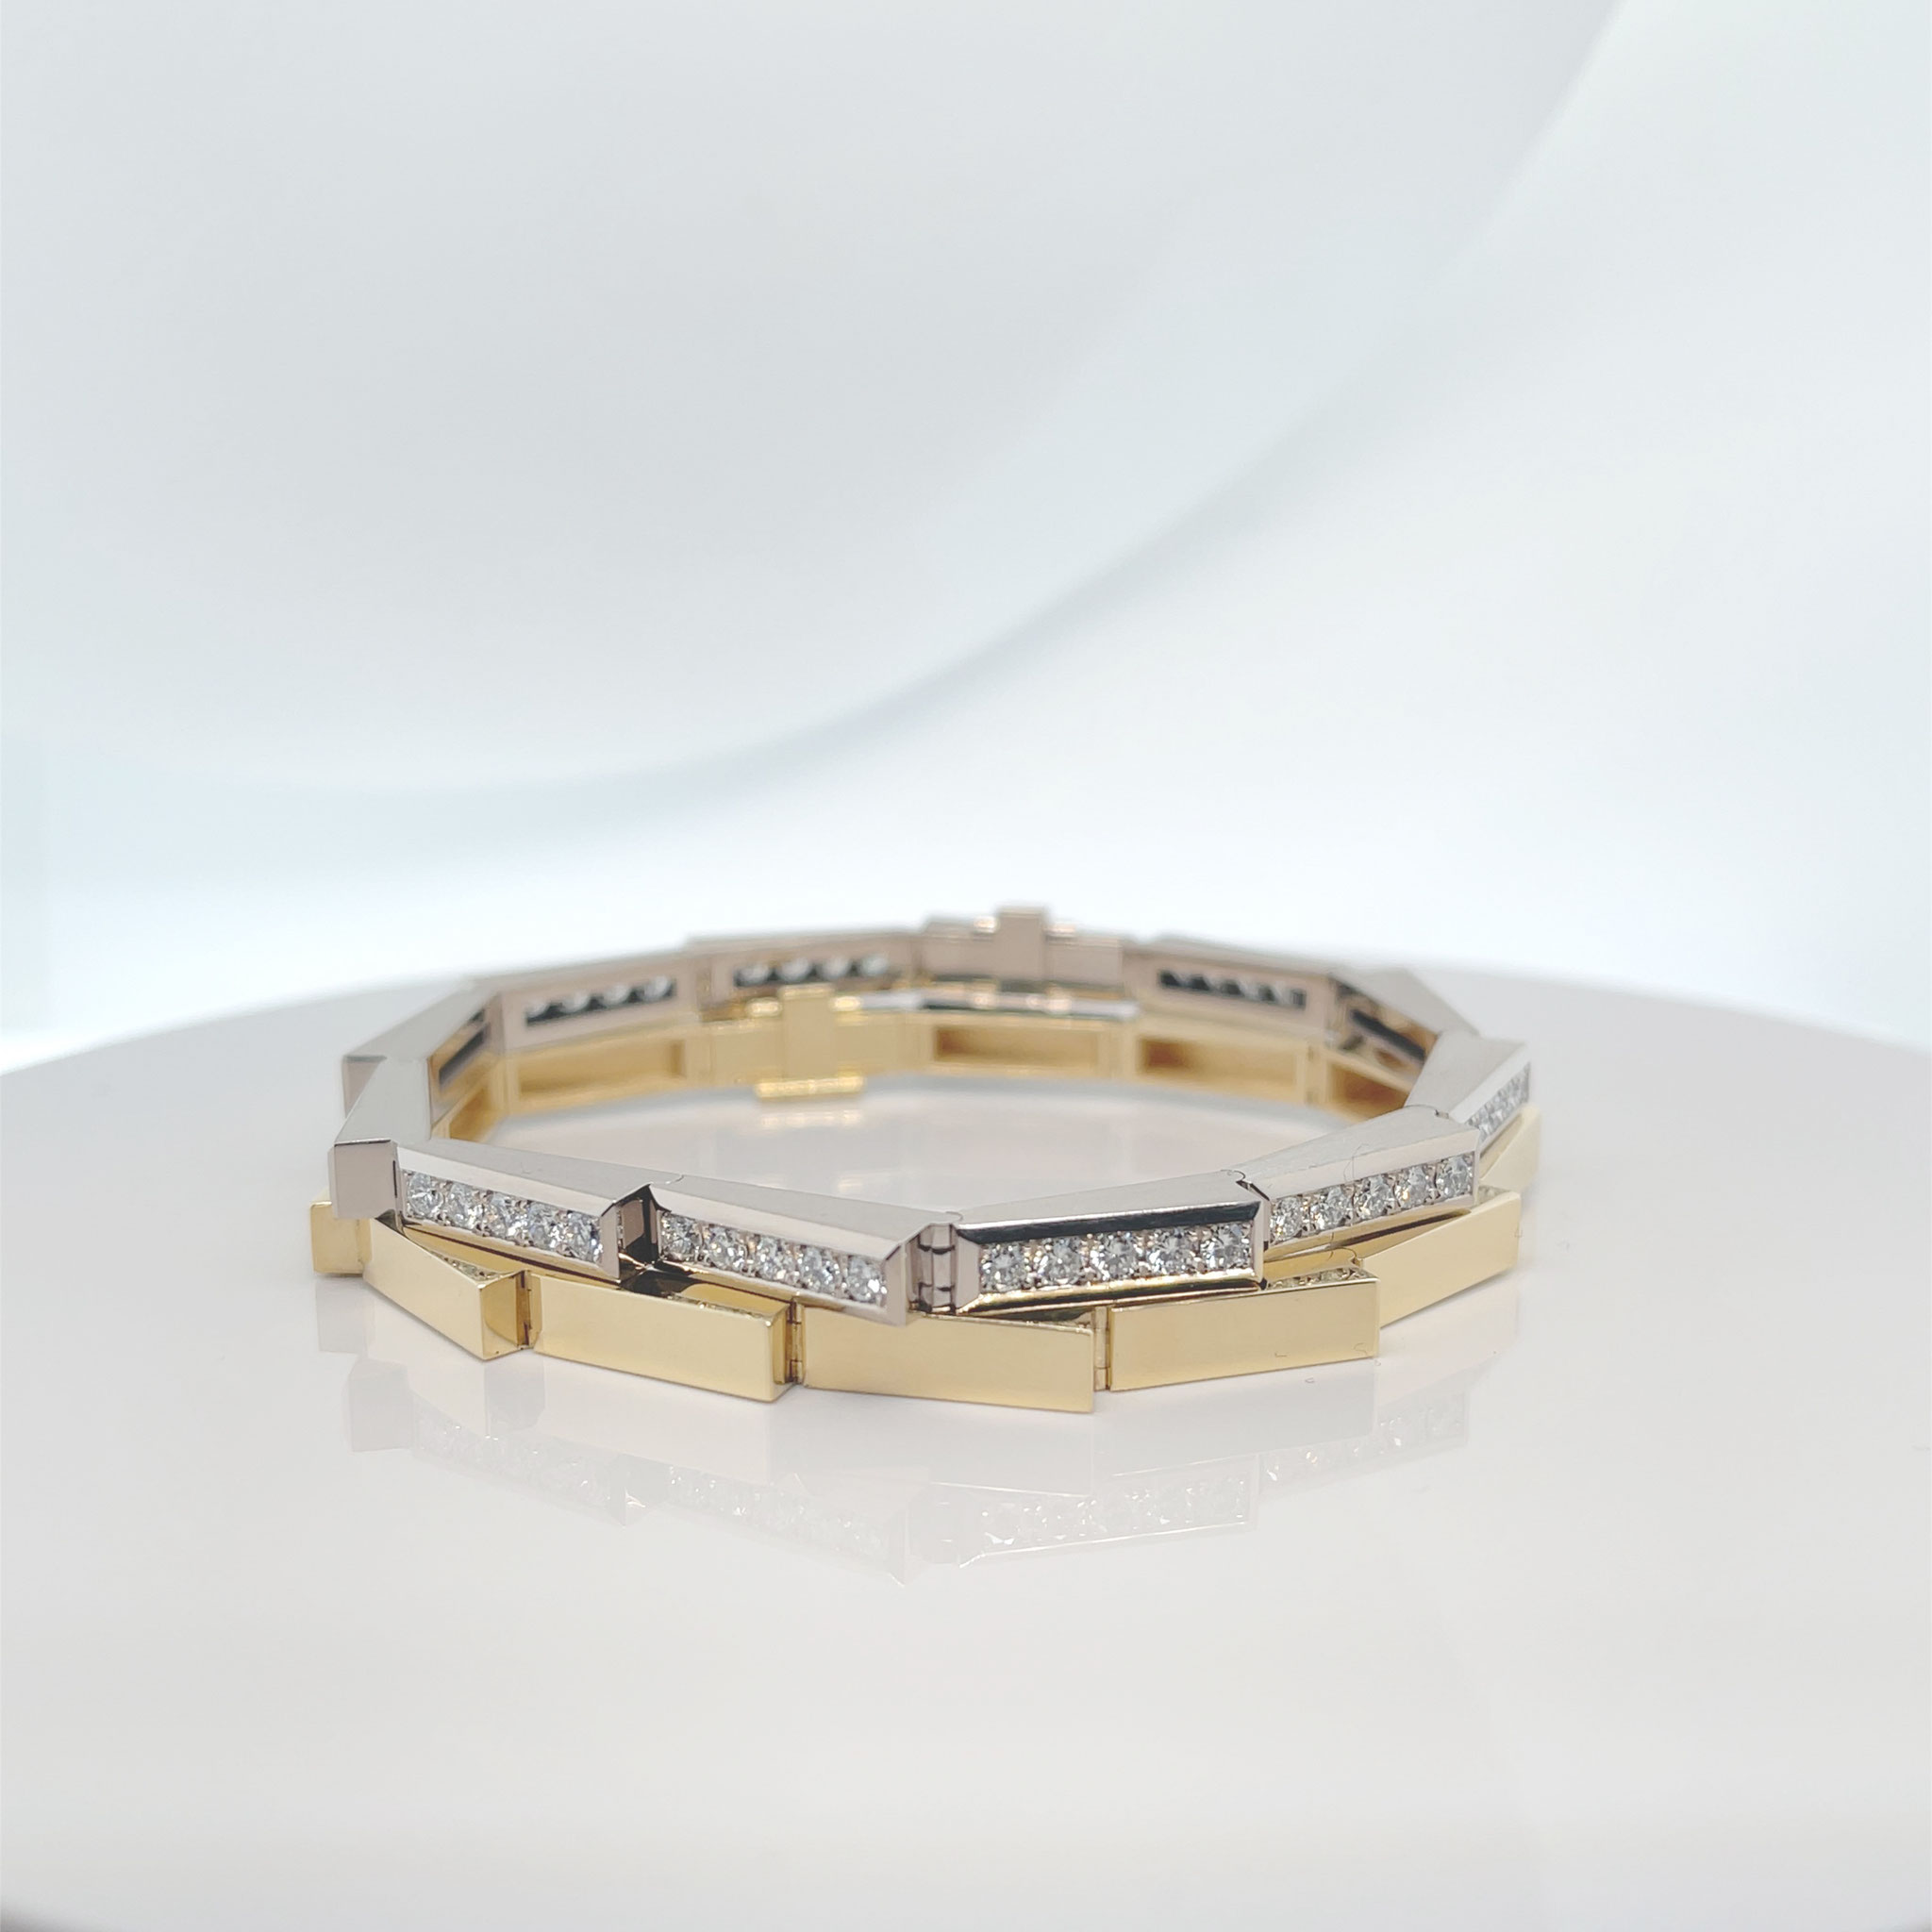 Armband aus 18 karat Weißgold, 3,17 carat Diamanten TW/vvs, 12.500 Euro, Armband aus 18 karat Gelbgold 4.900 Euro